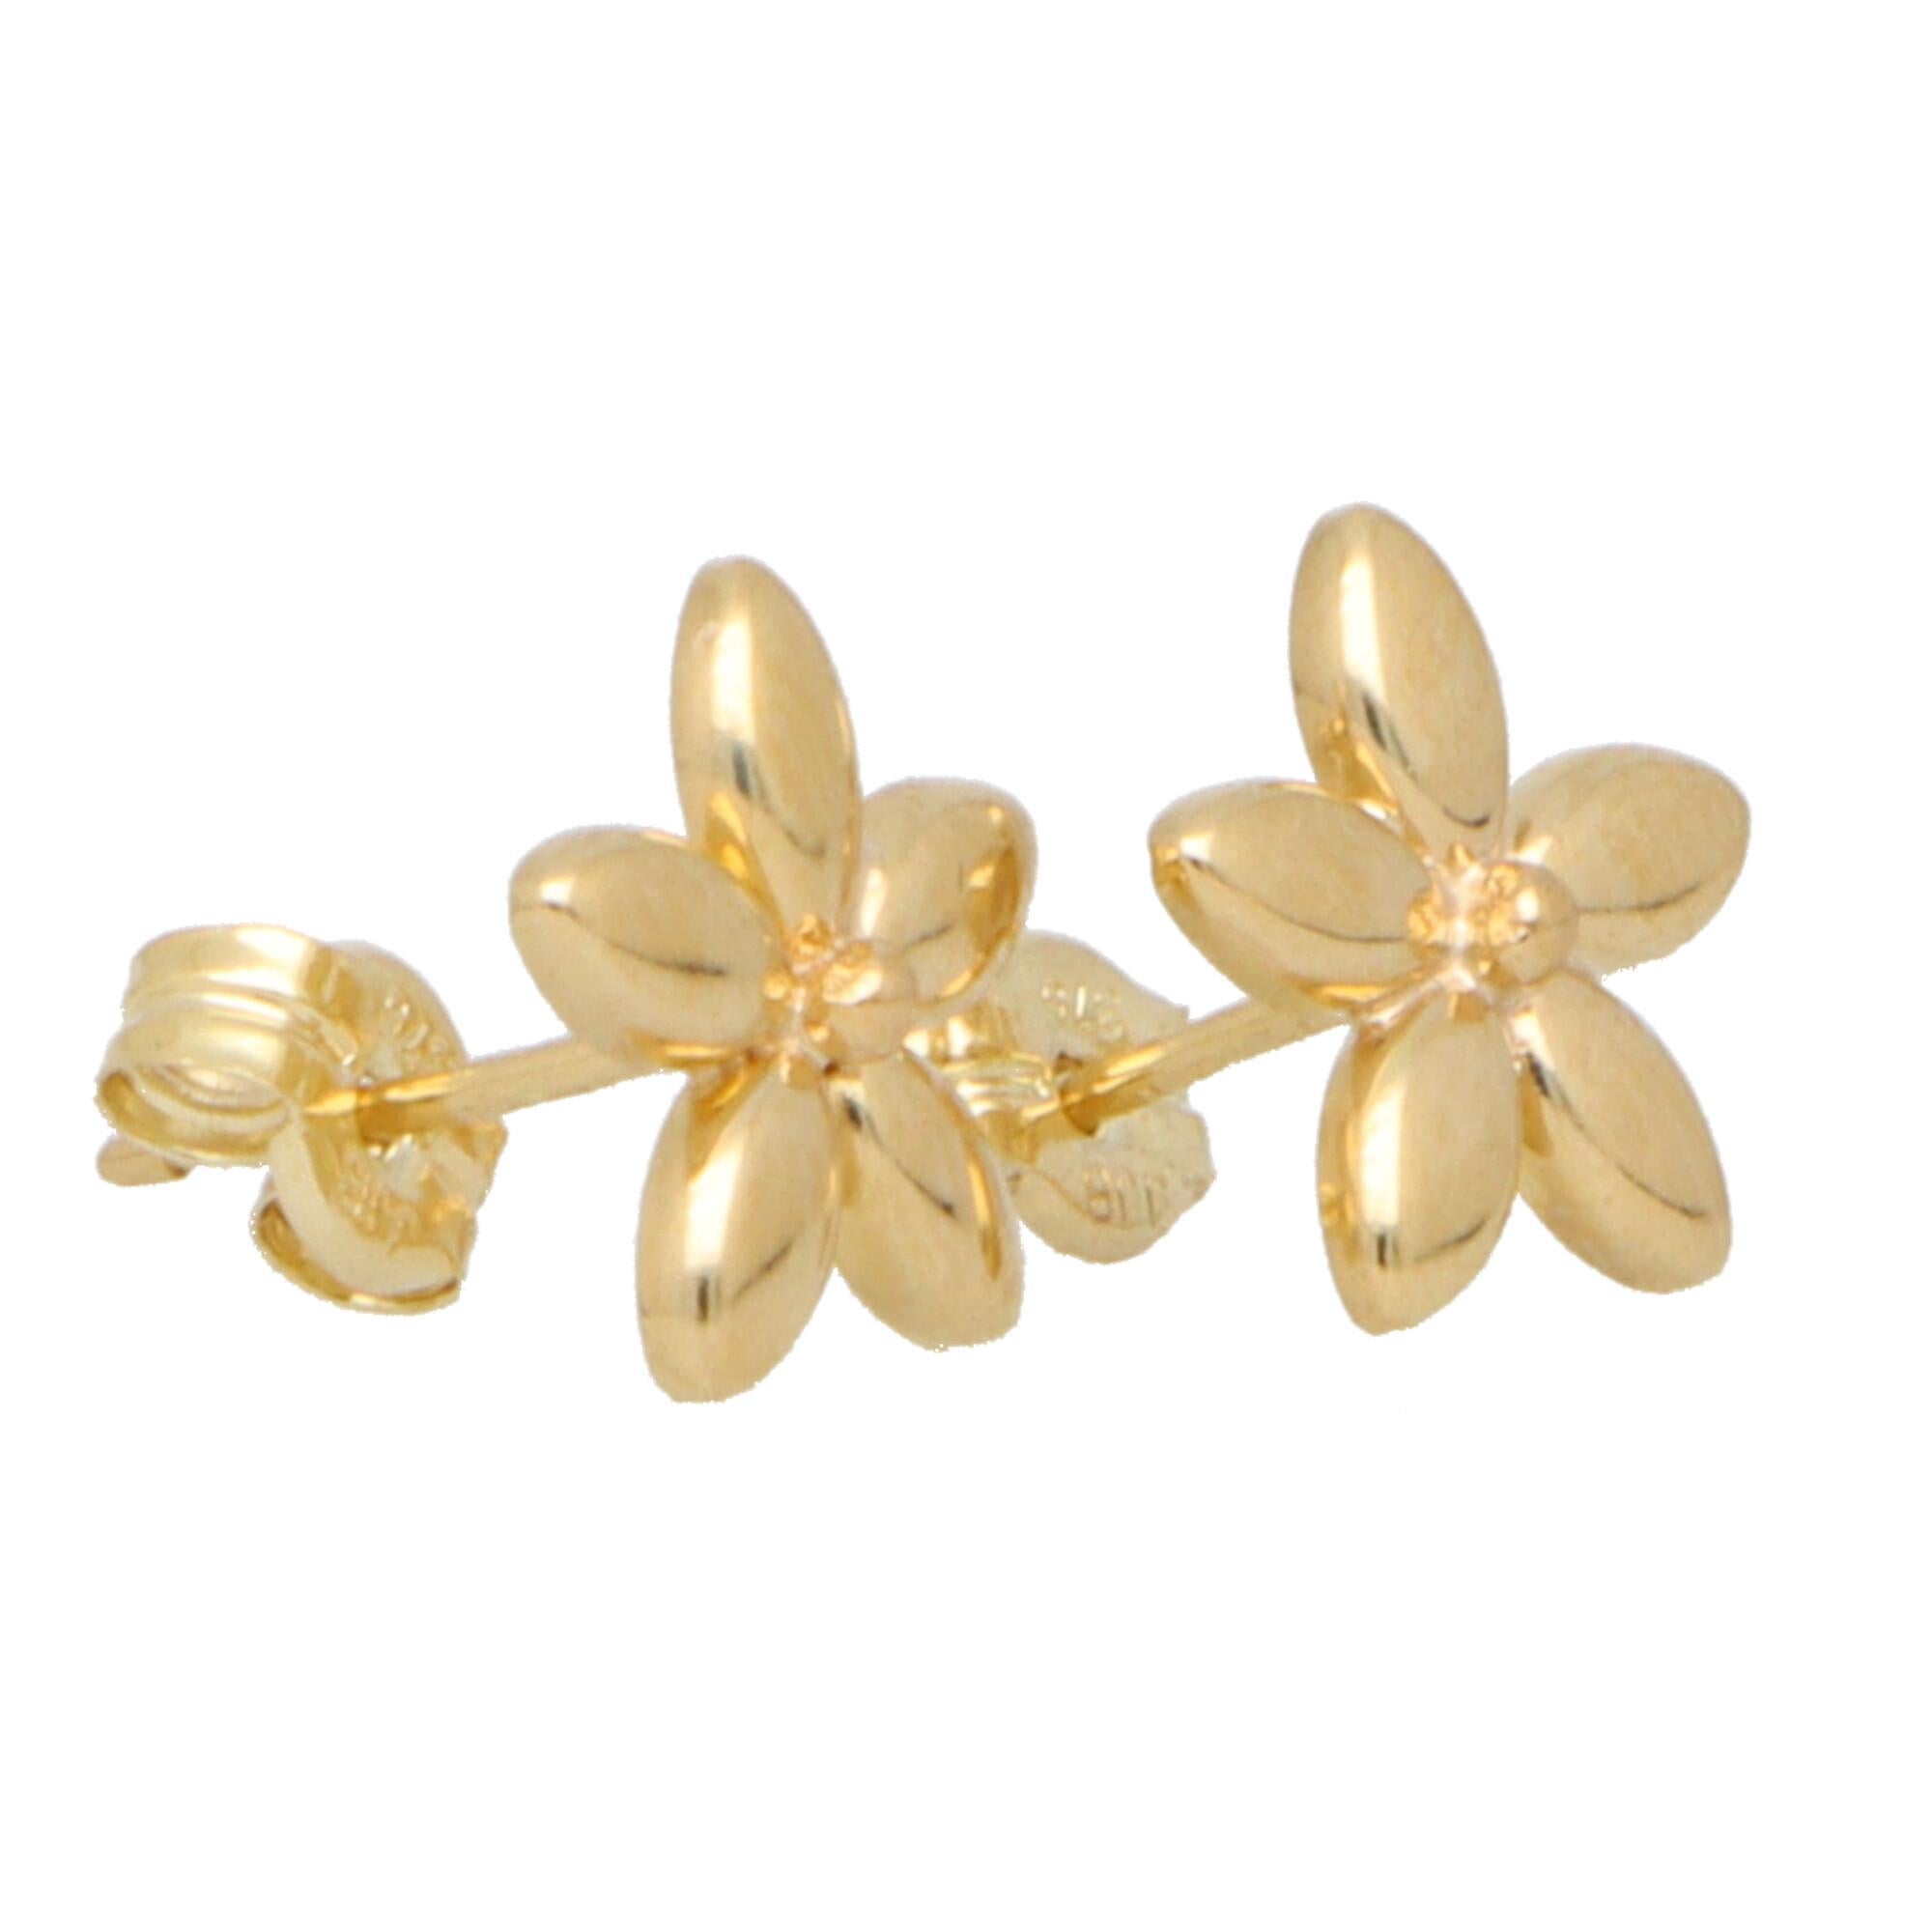 Ein elegantes Paar Blumen-Ohrstecker aus 9 Karat Gelbgold.

Jeder Ohrring besteht aus einer fünfblättrigen Blüte und ist mit einem massiven Goldstift und einem Schmetterlingsverschluss an der Rückseite befestigt.

Aufgrund des Designs und der Größe